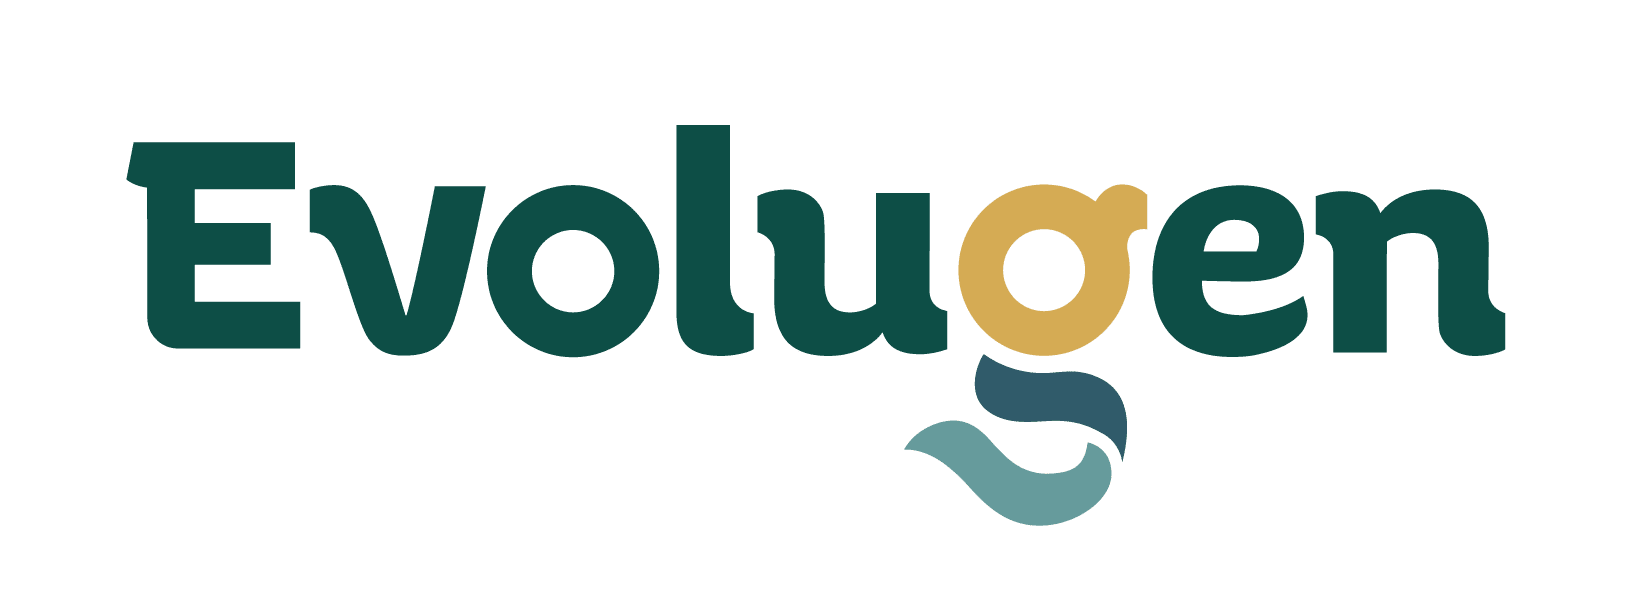 Evolugen_Logo_4C -01